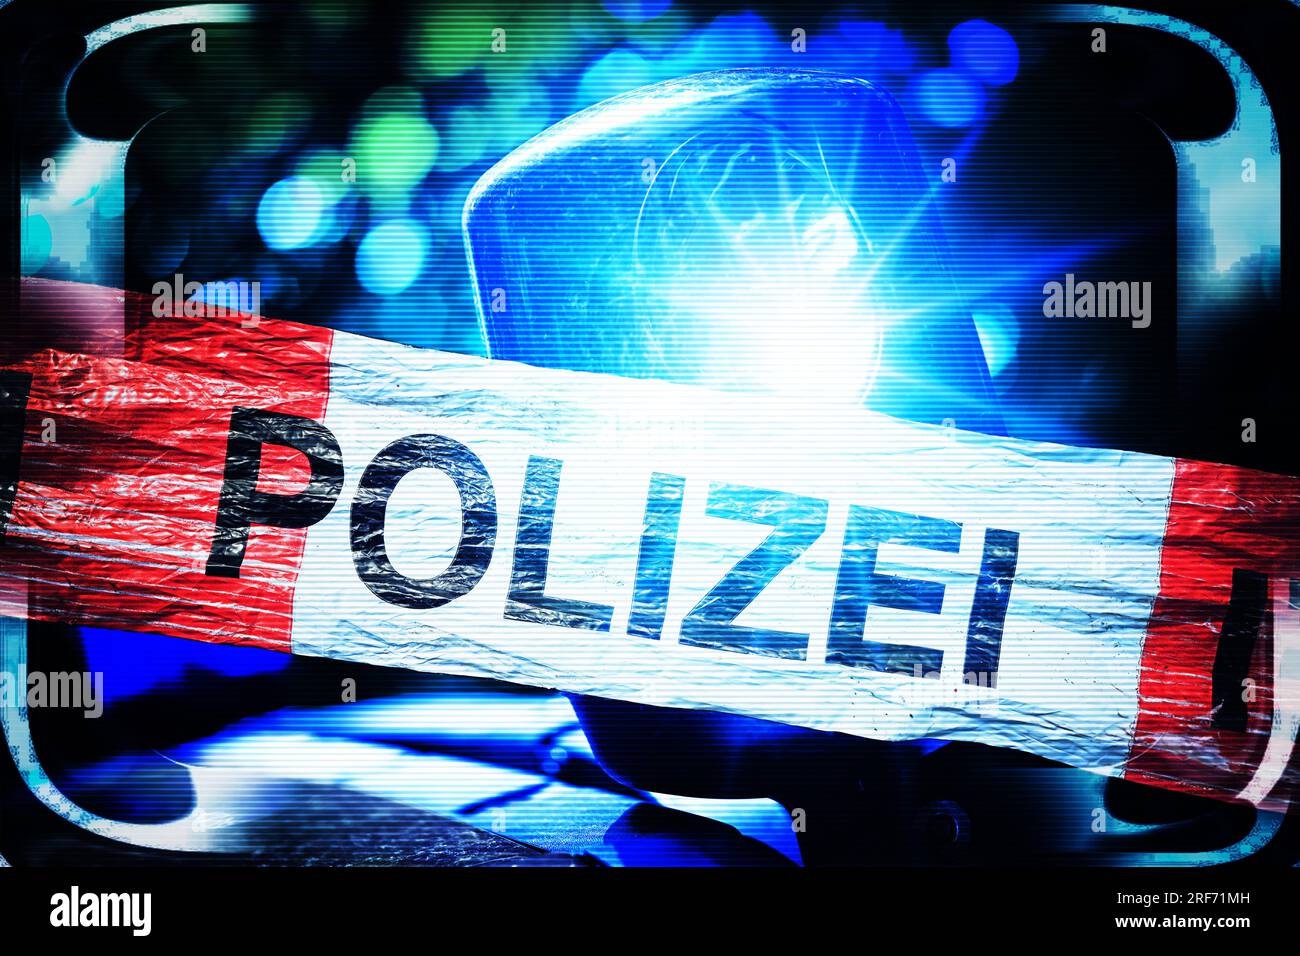 FOTOMONTAGE, Polizei-Absperrband und Blaulicht, Symbolfoto Polizeieinsatz Stock Photo